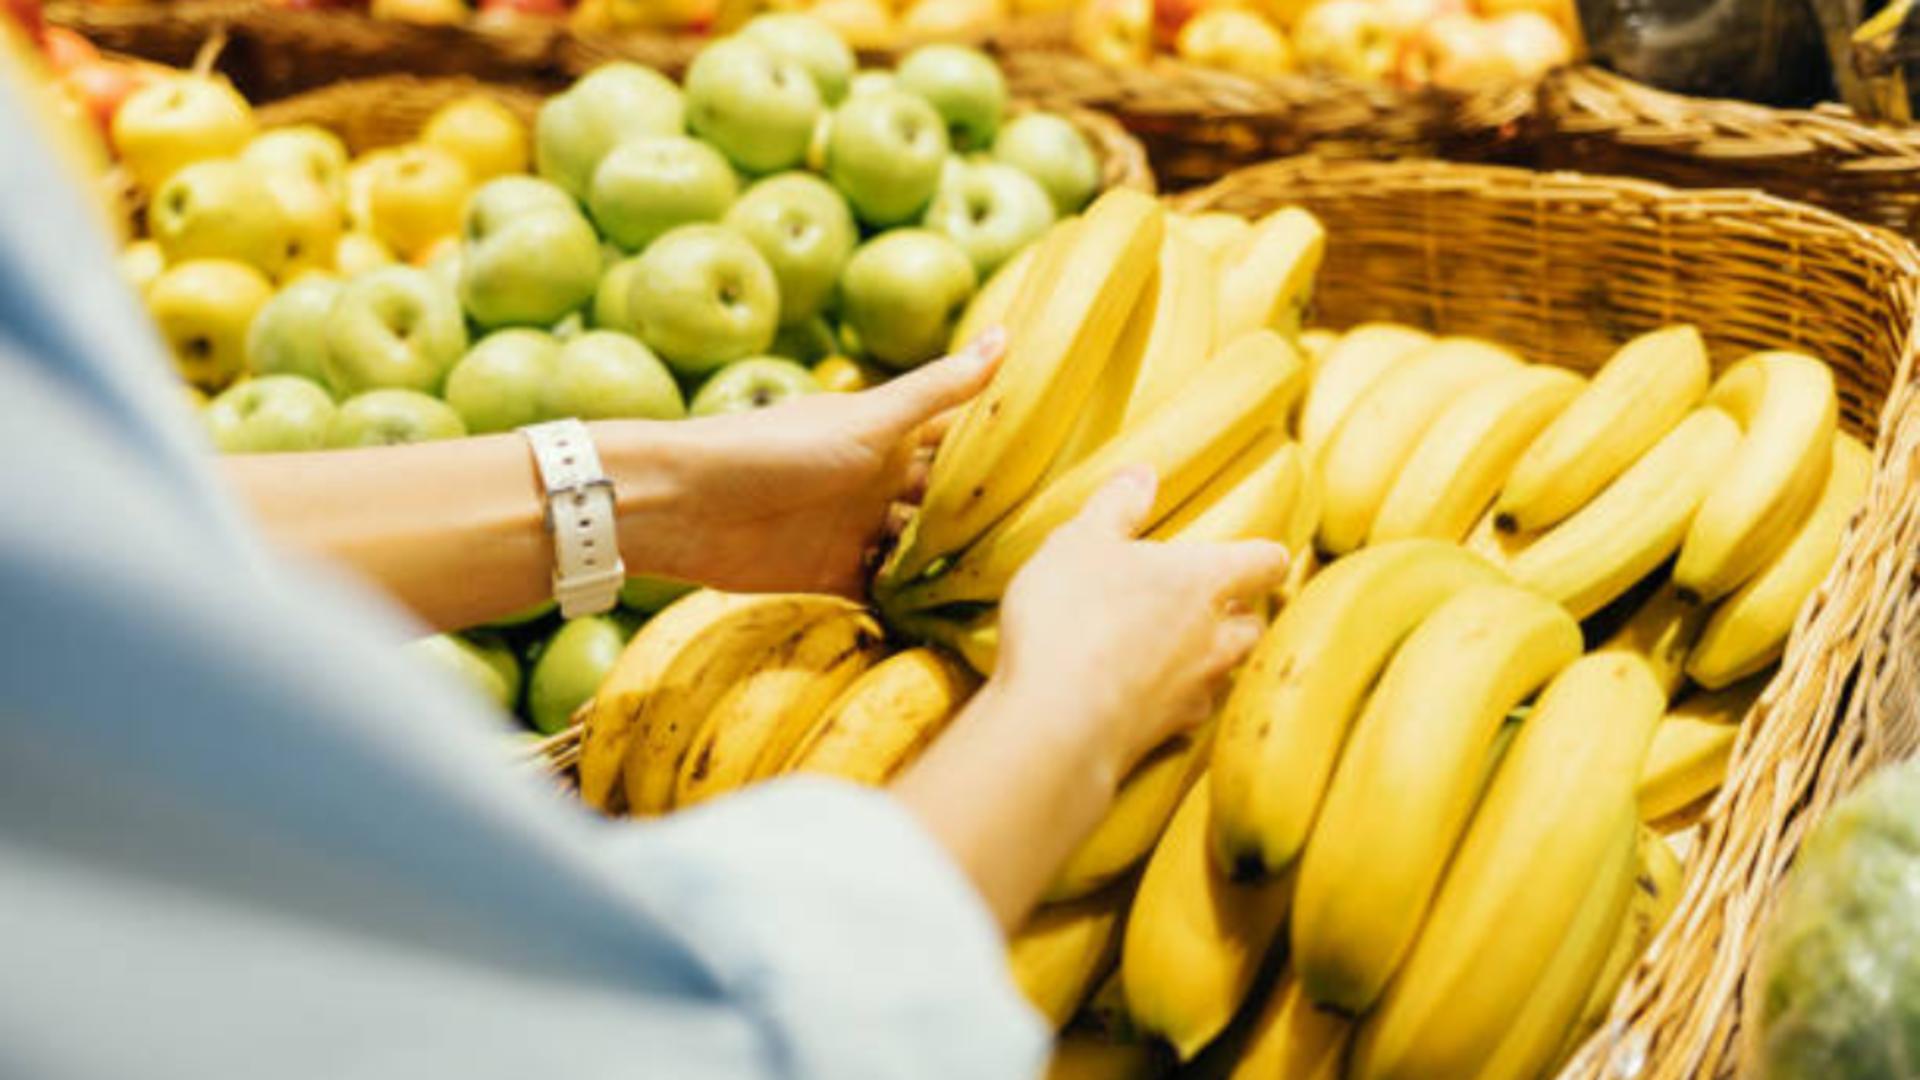 Pericolul ascuns în coaja de banană. Ce trebuie să faci înainte să mănânci fructul. Ai procedat greșit până acum?